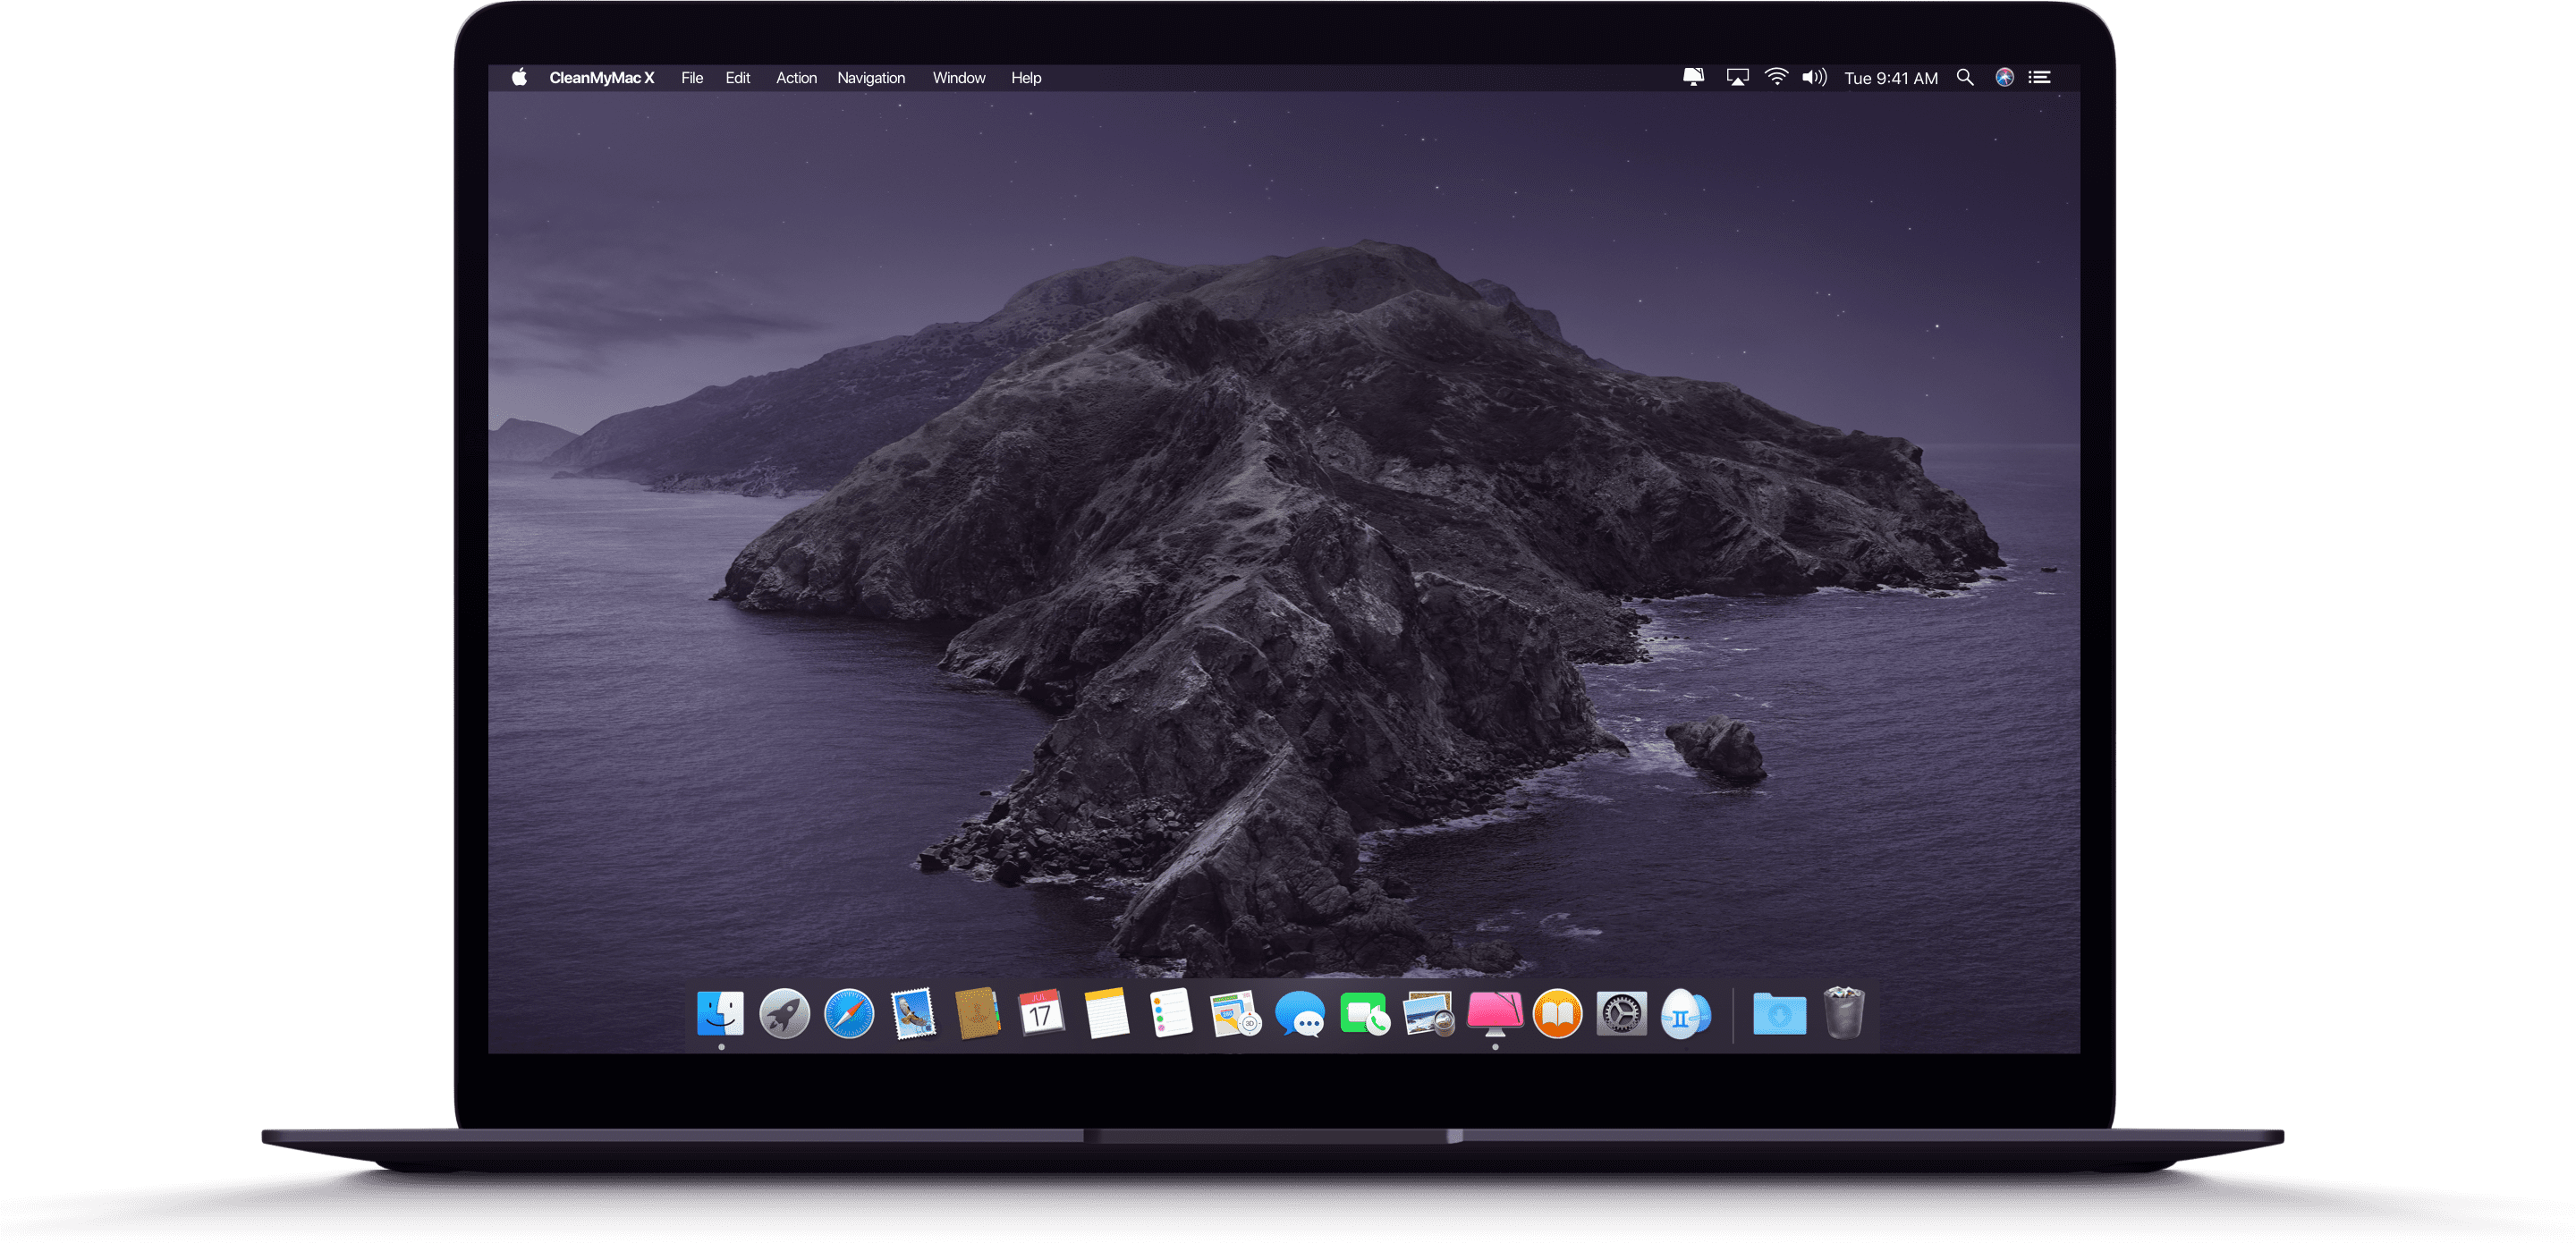 clean my mac 4.8